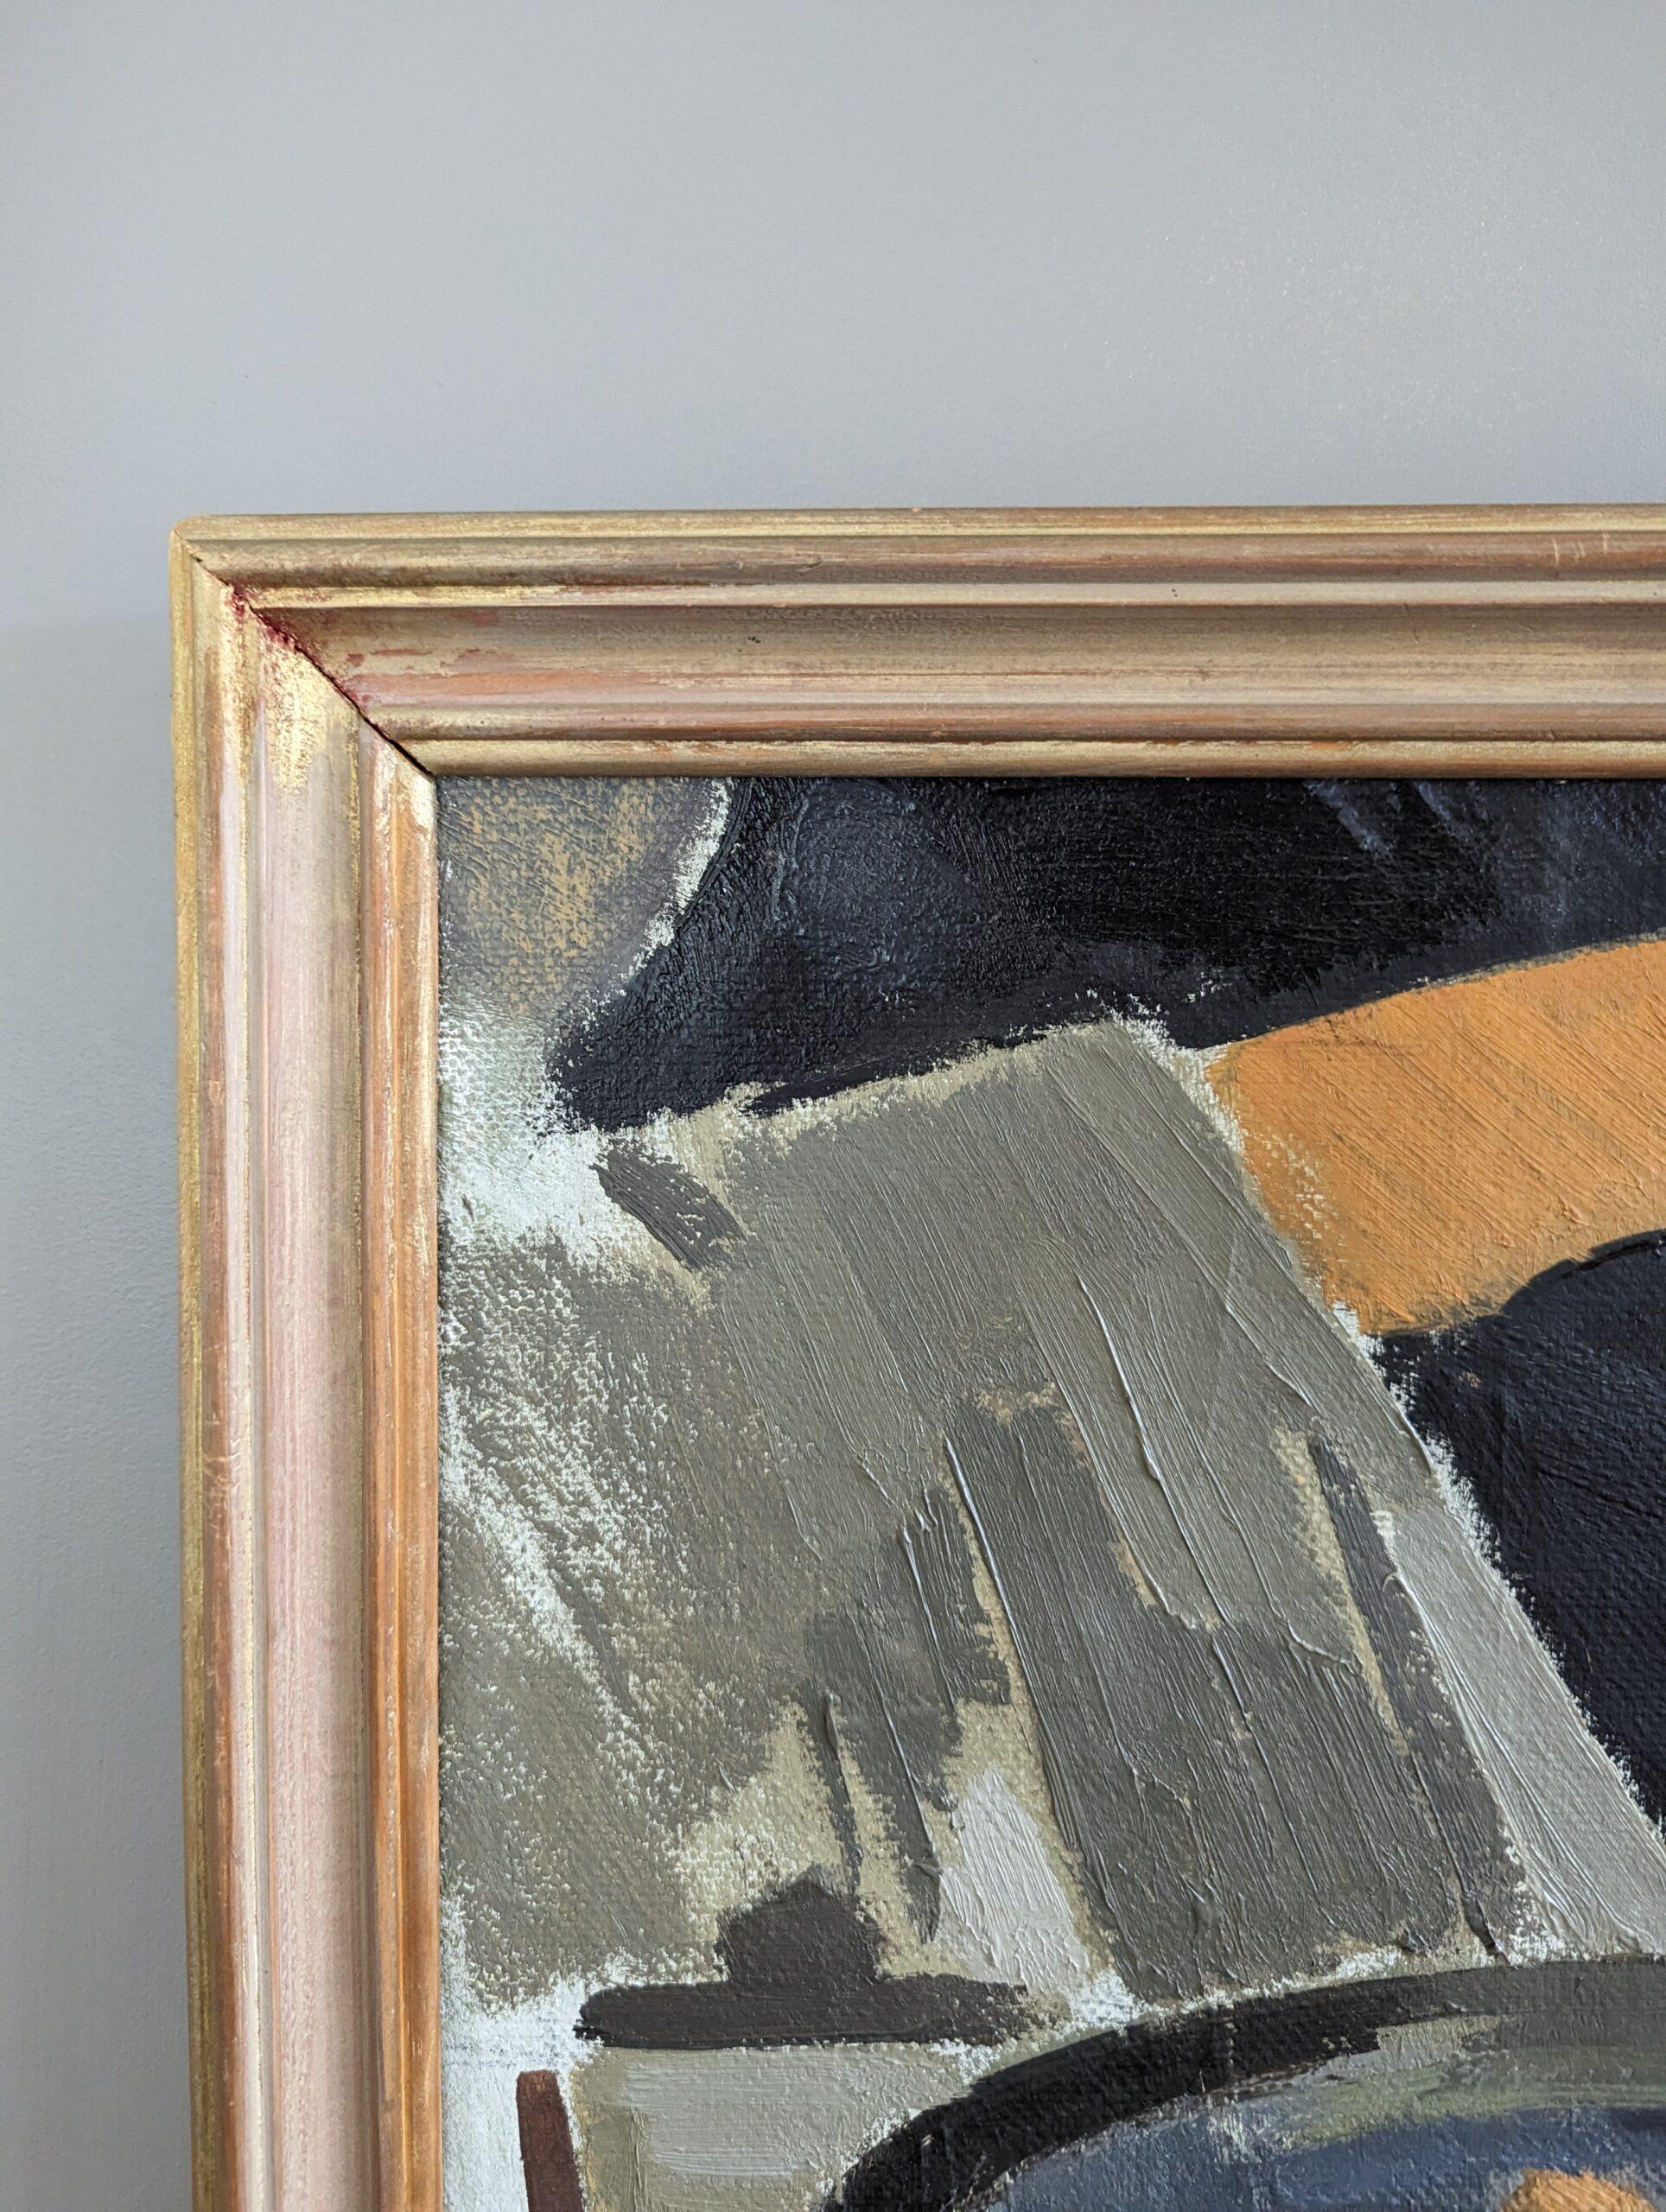 ATTENDRE
Taille : 43 x 53 cm (cadre compris)
Huile sur toile 

Une nature morte d'intérieur de style moderniste du milieu du siècle qui capture un moment d'élégance tranquille, exécutée à l'huile sur toile.

Au centre d'une table se trouve une